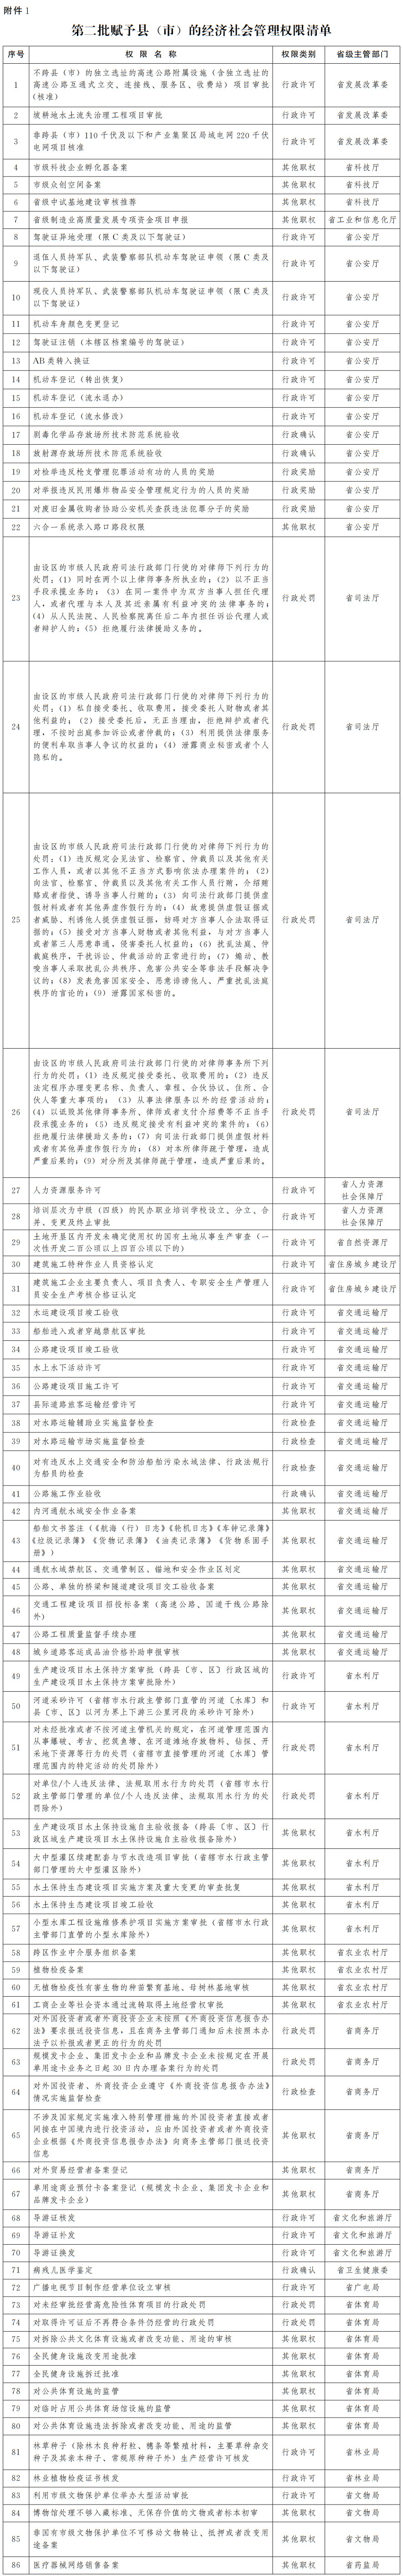 河南省人民政府办公厅关于进一步深化县域放权赋能改革的意见